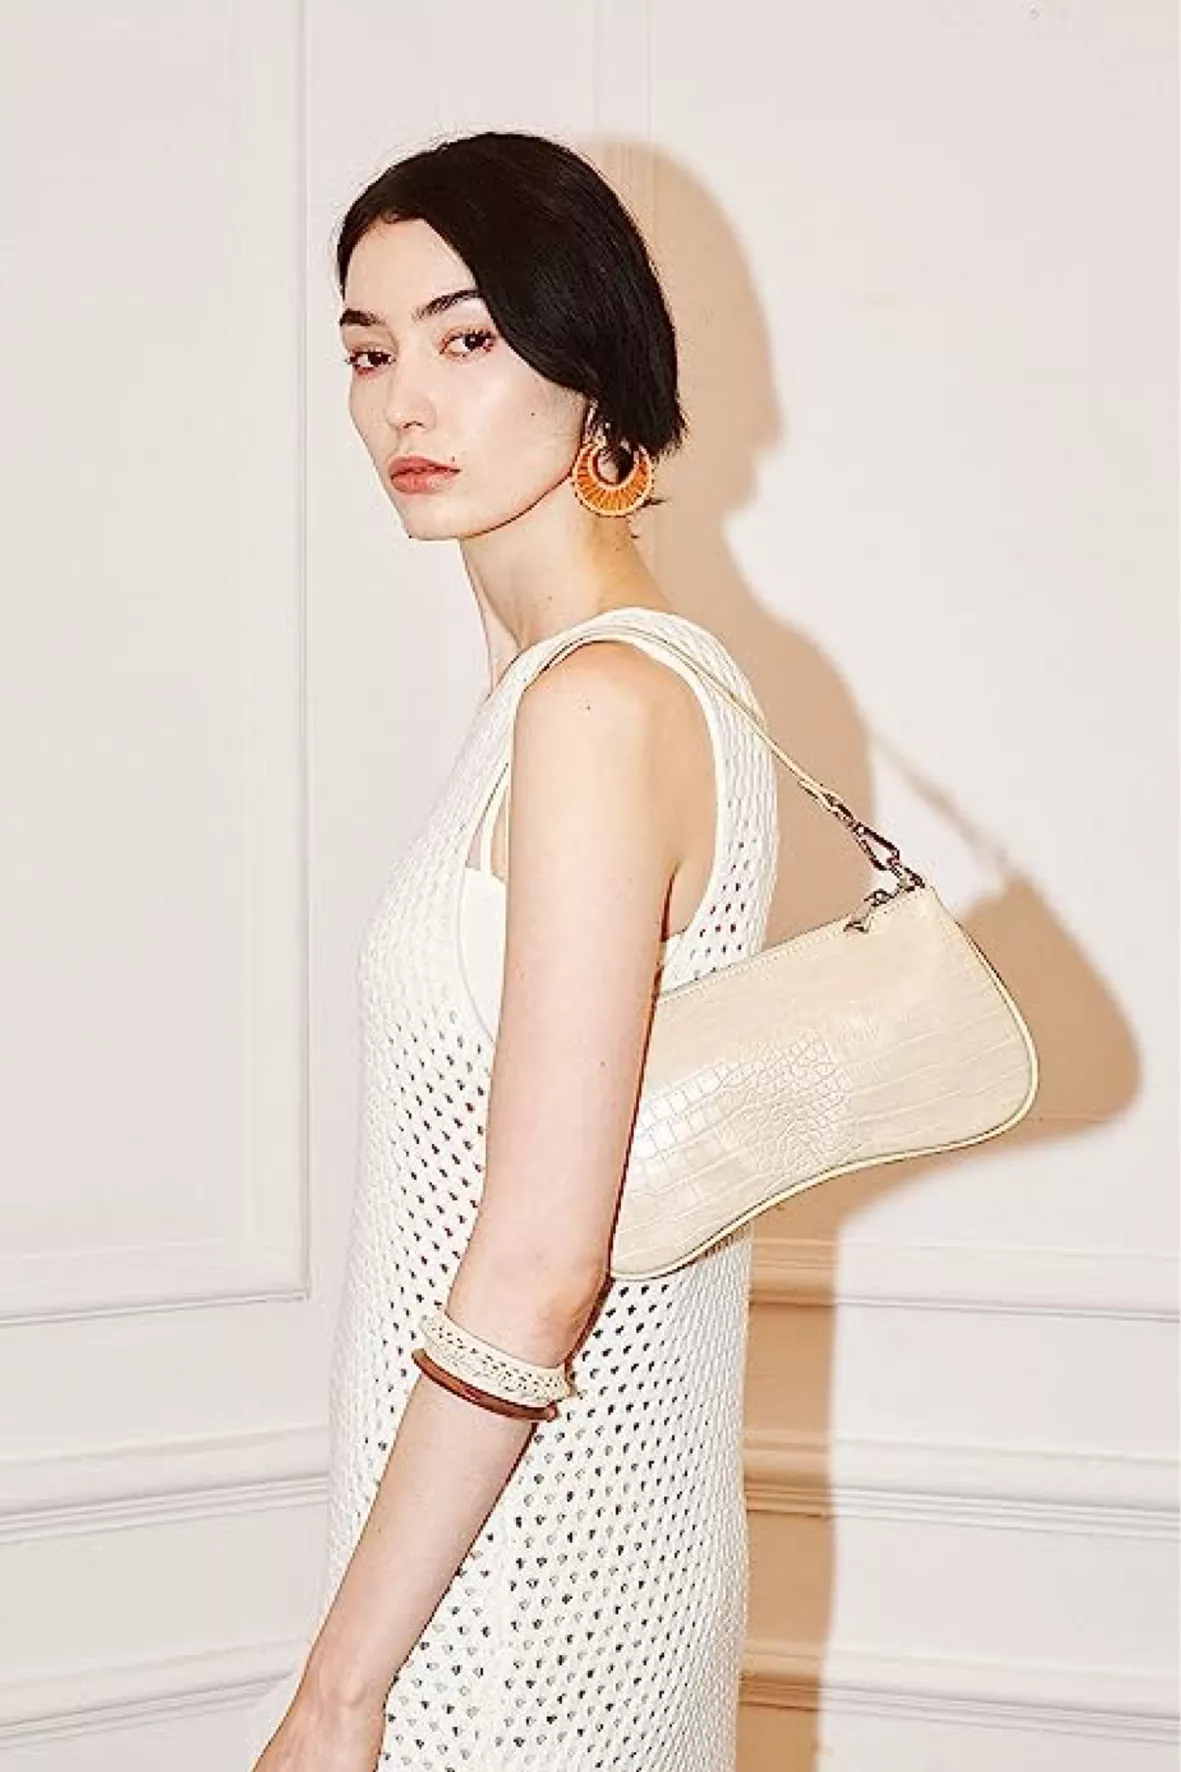 Eva Faux Fur and Sequin Mini Shoulder Bag - Beige Online Shopping - JW Pei